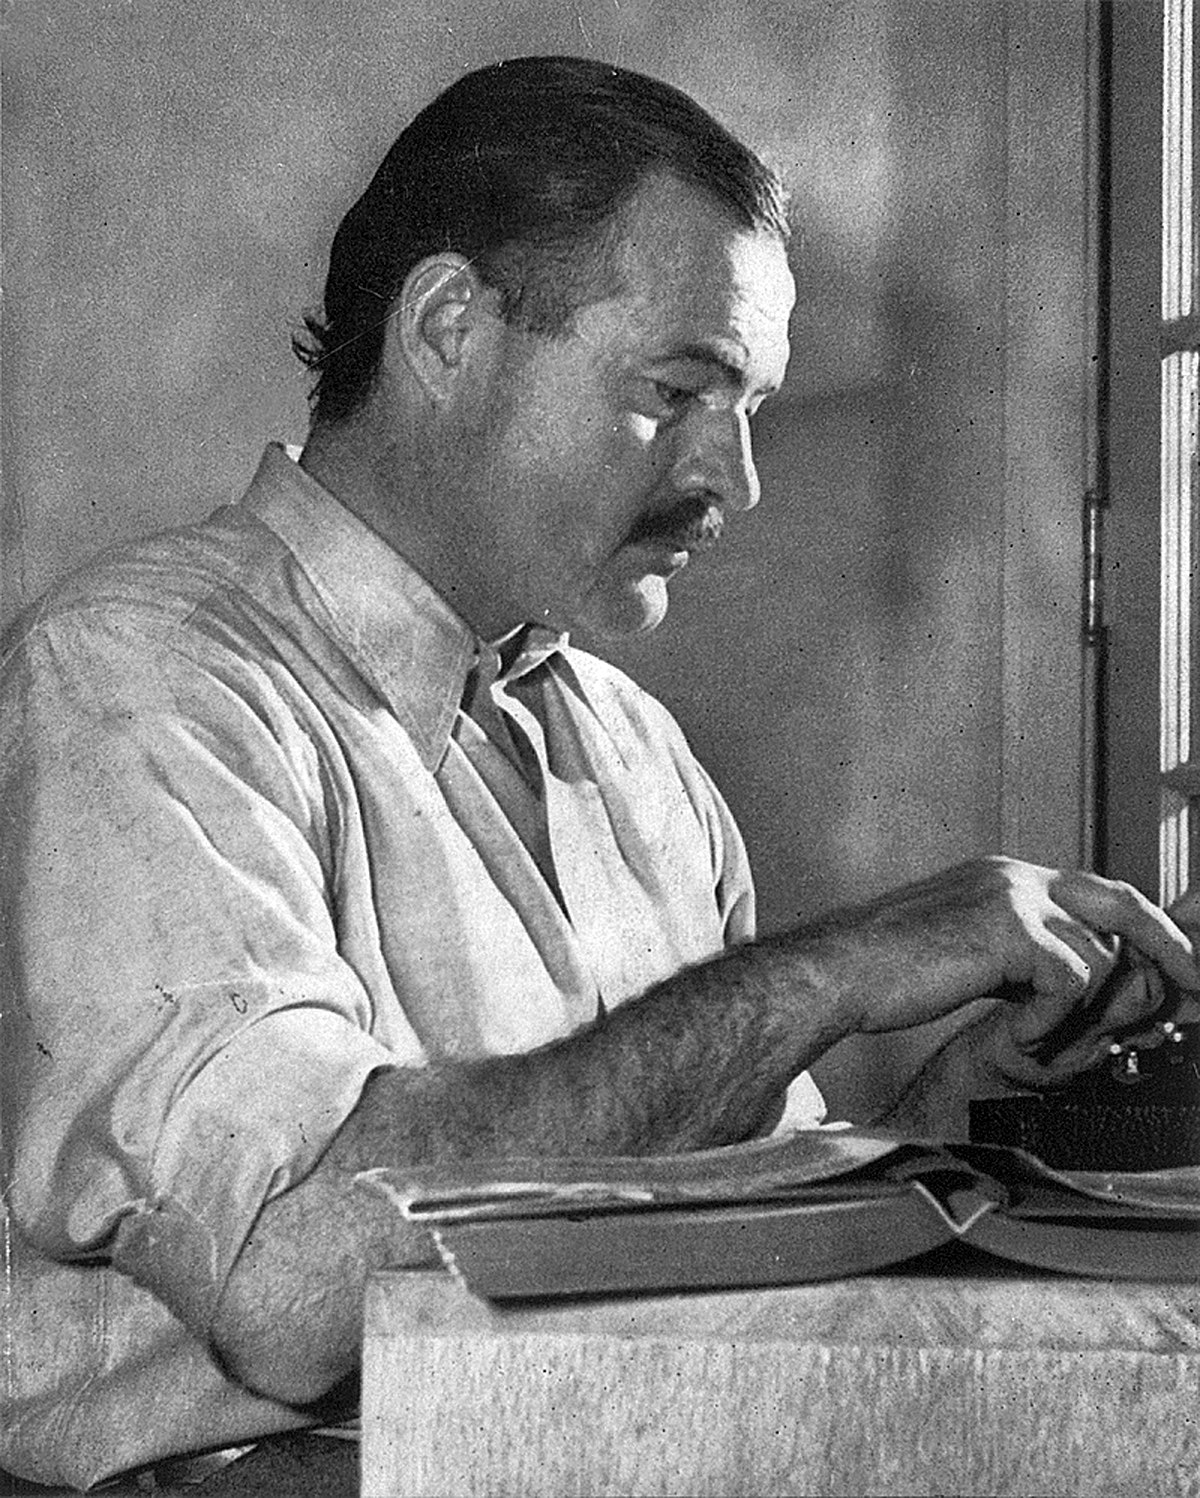 Ernest Hemmingway writing at a typewriter.